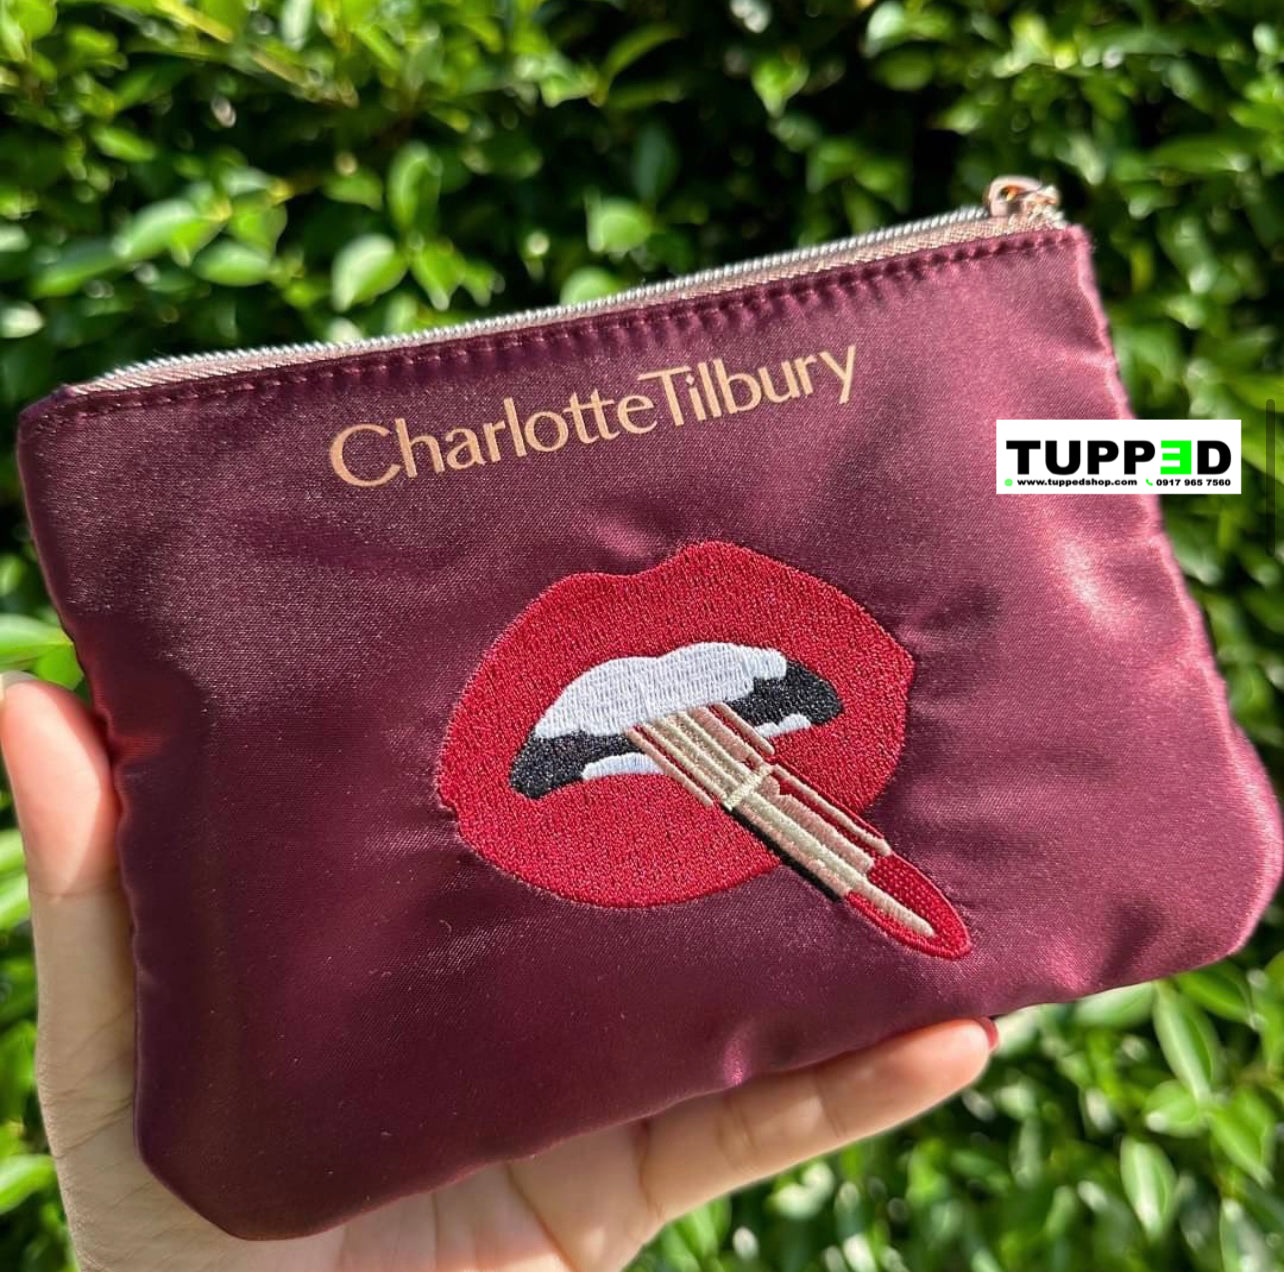 Charlotte Tilbury Make-Up Bag / Pouch (Walk of No Shame)